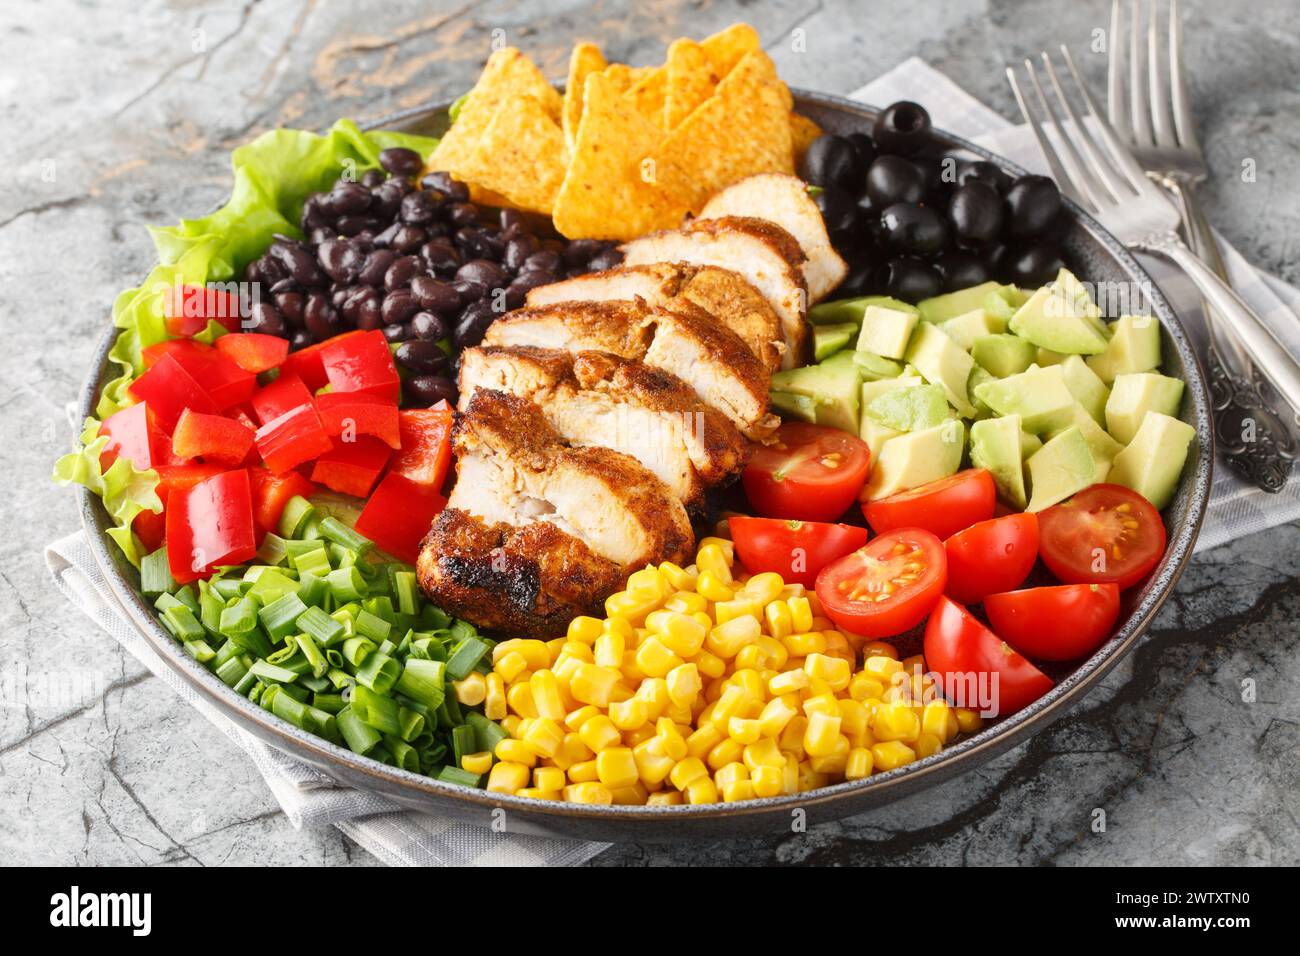 Salade de poulet Tex-Mex Santa Fe avec laitue, tomates, maïs, haricots noirs, poivre, avocat, olive gros plan sur l'assiette sur la table. Horizontal Banque D'Images